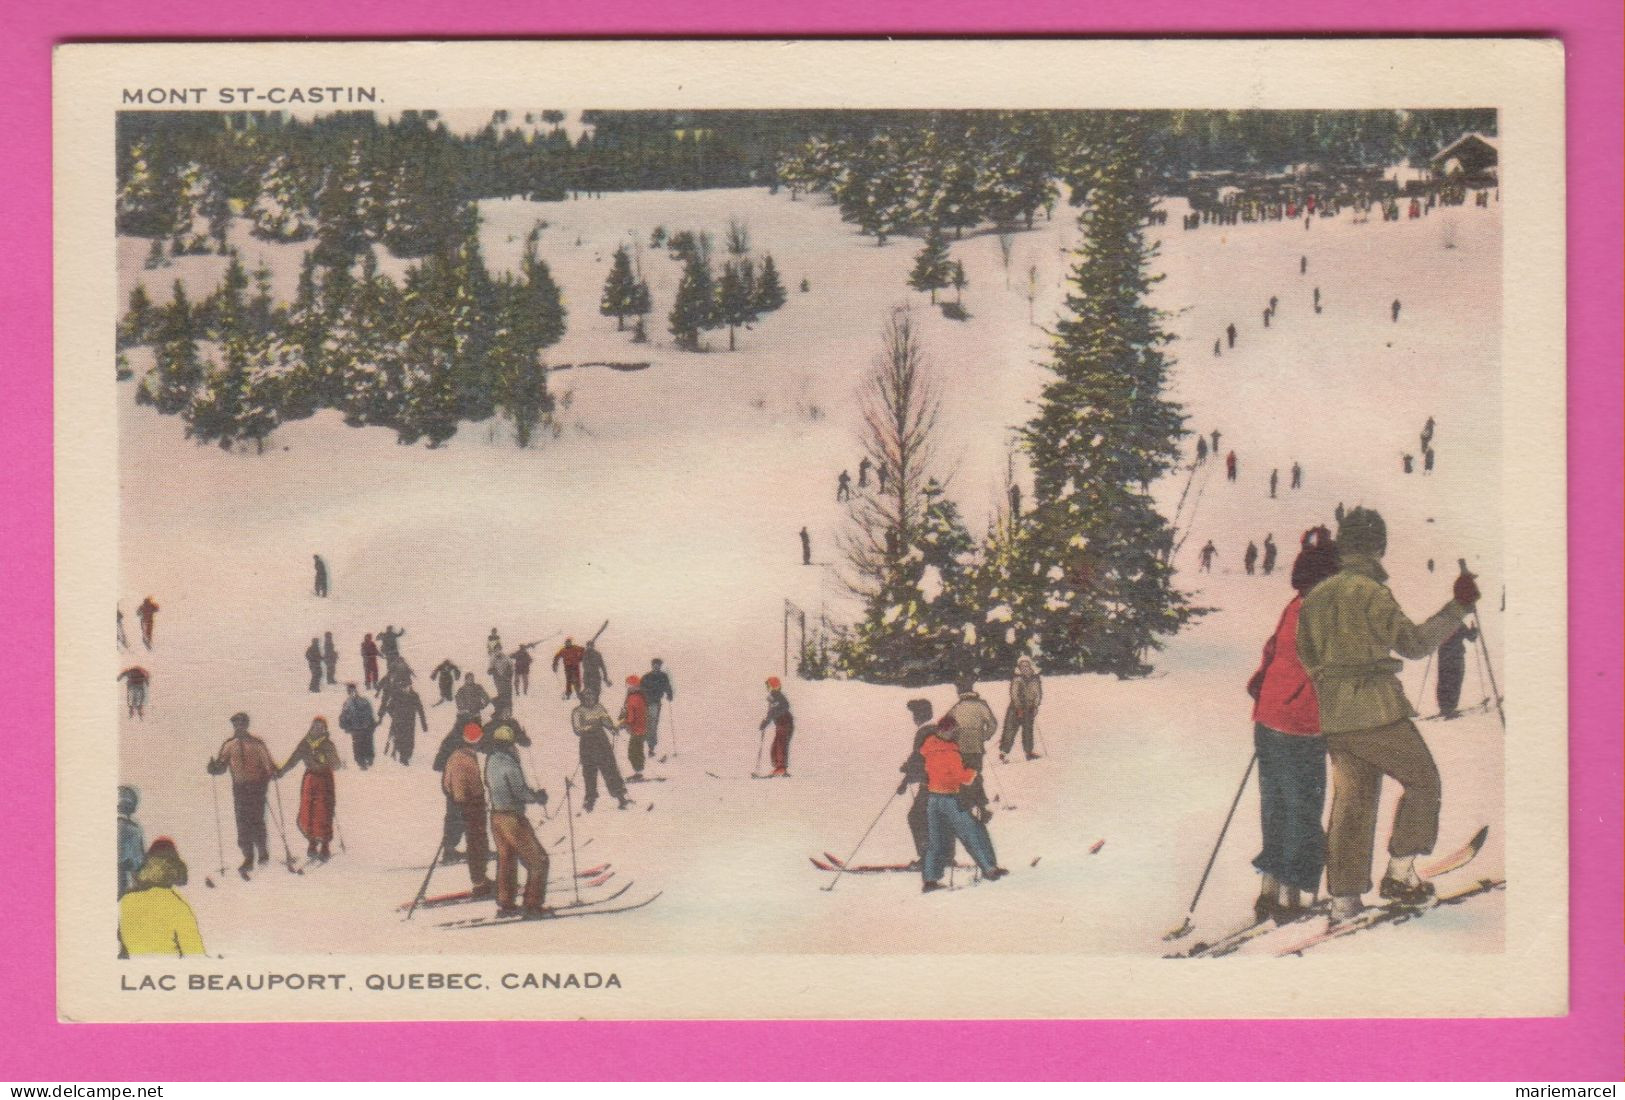 CANADA - QUÉBEC - LAC BEAUPORT - MONT ST CASTIN - Nombreux Skieurs - Carte Colorisée - Québec - Beauport